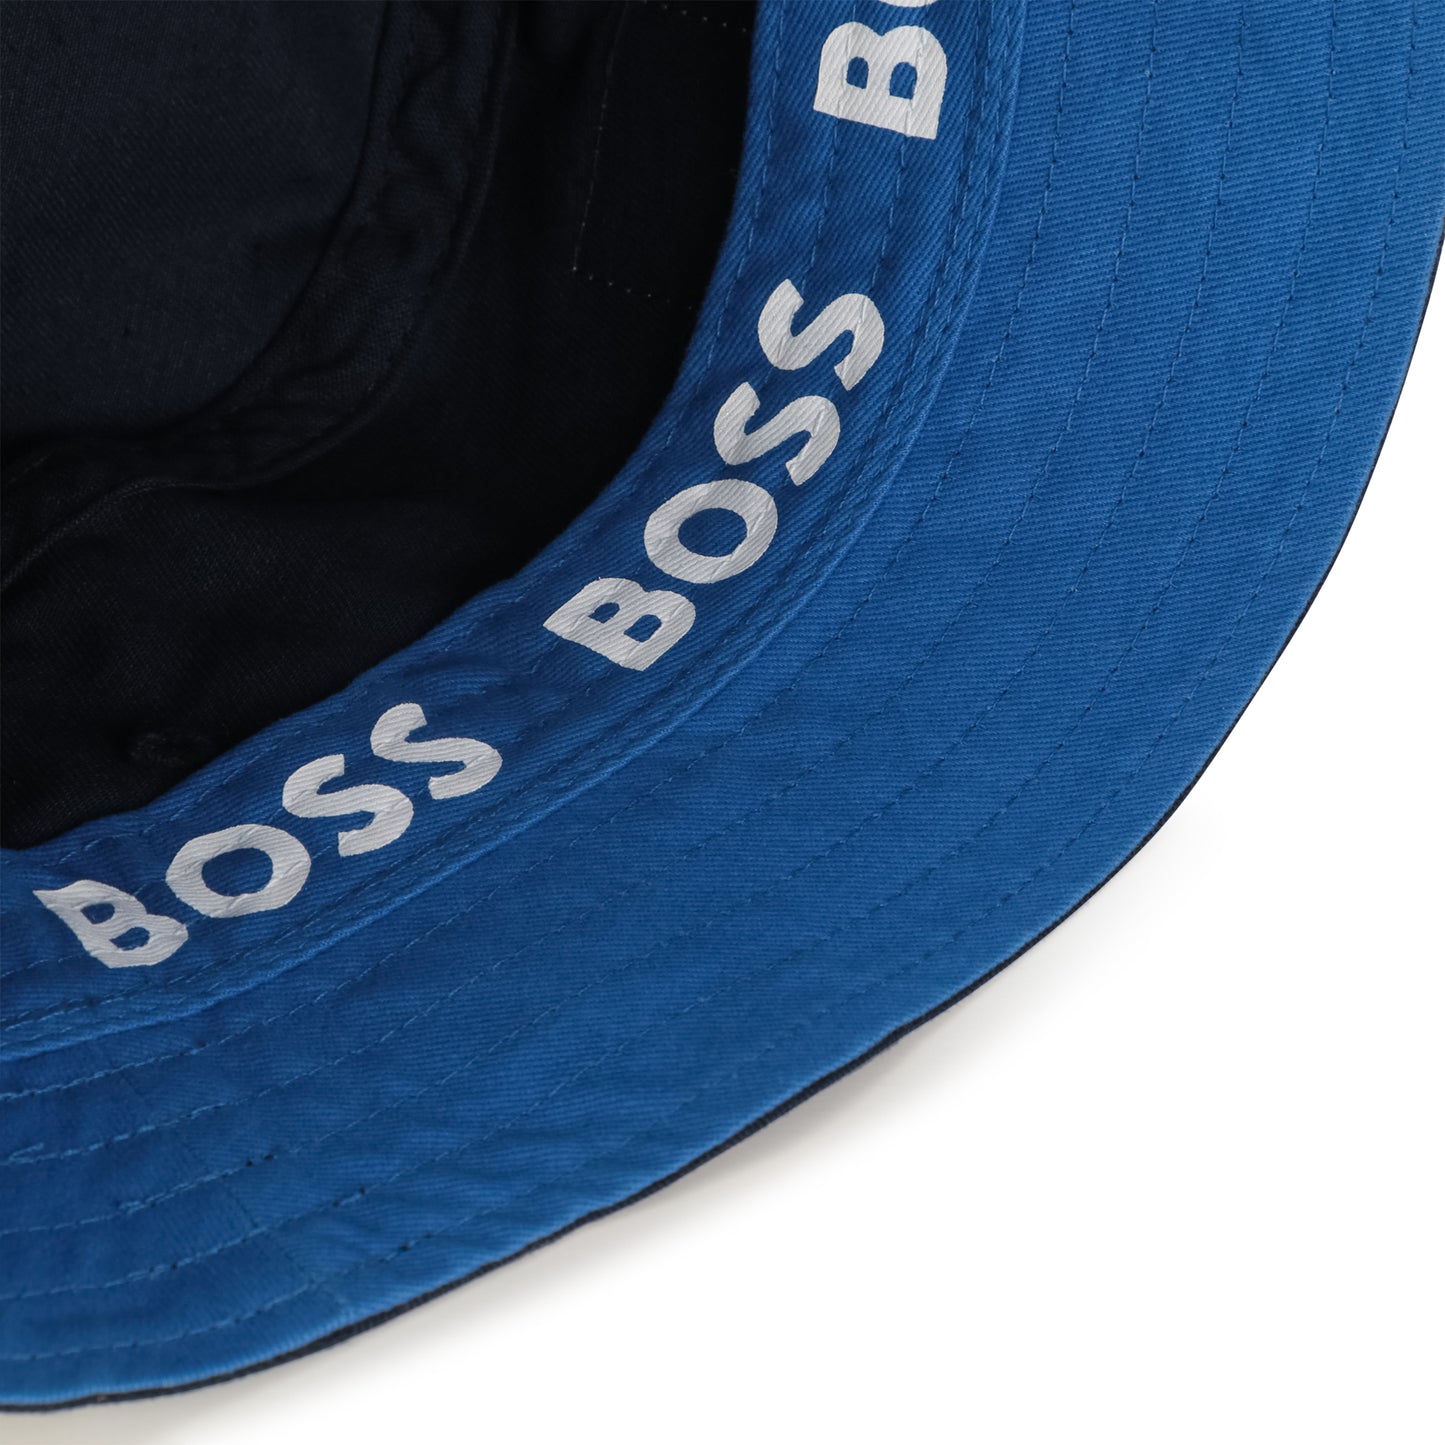 Hugo Boss Boys Bucket Hat_ Navy J21251-849